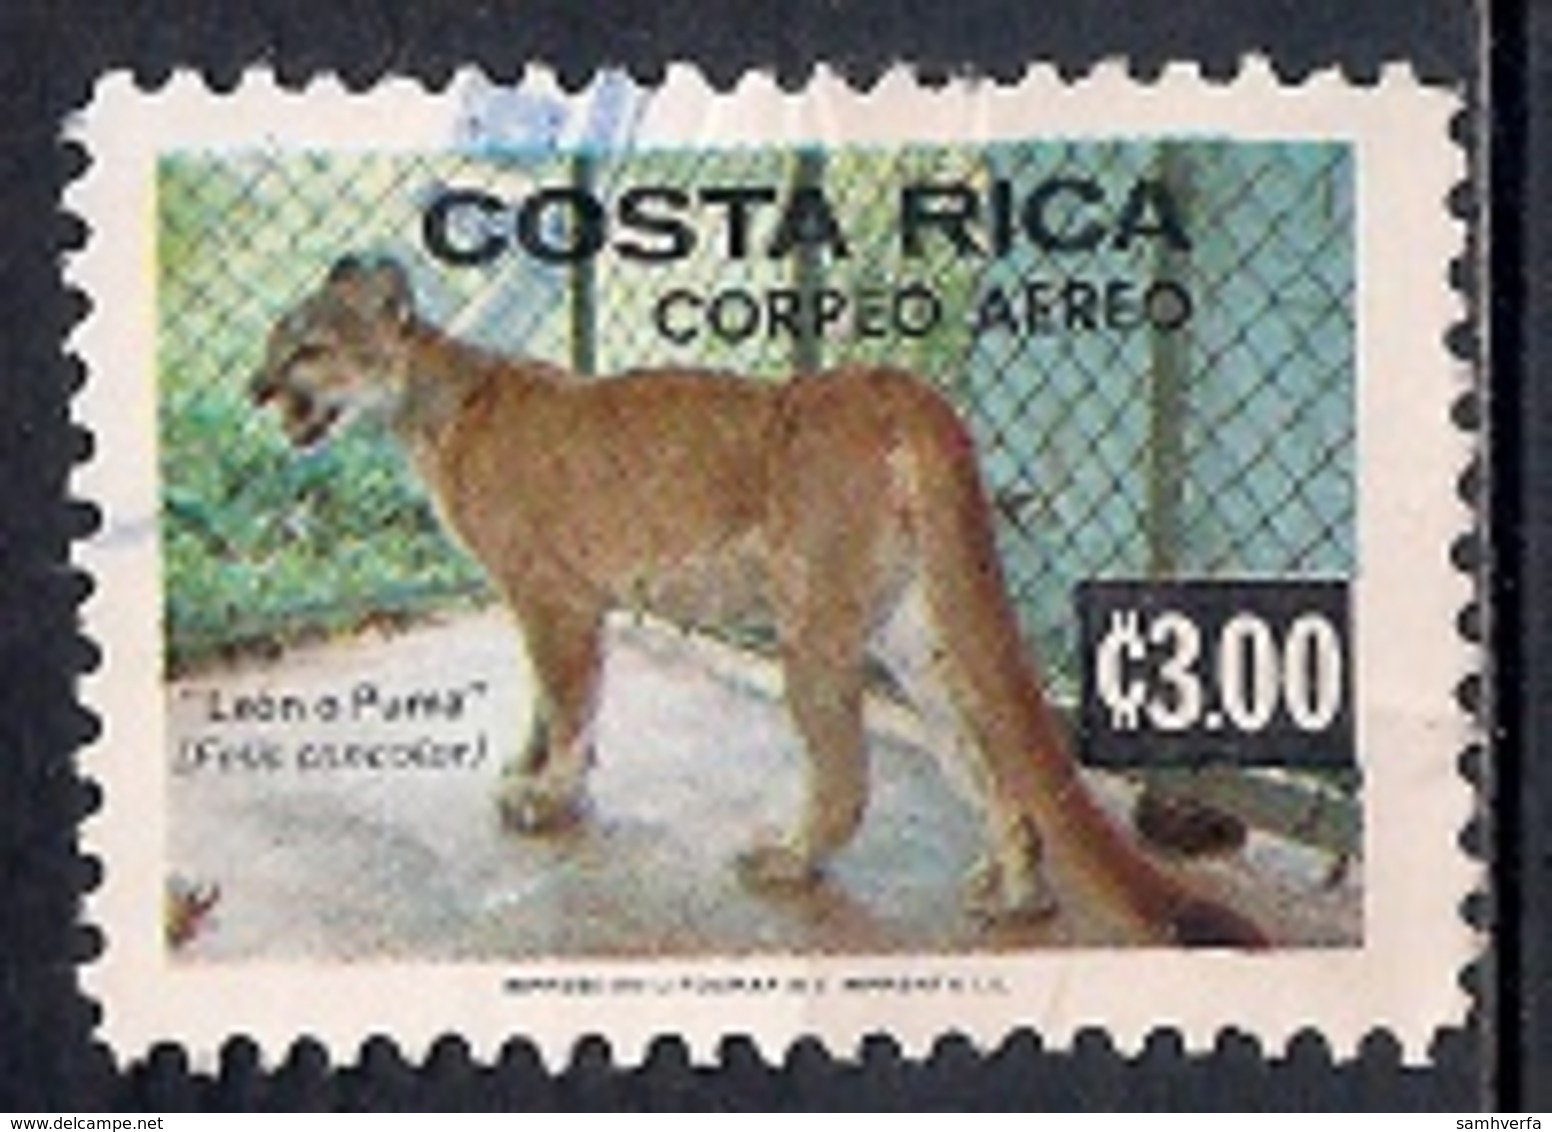 Costa Rica 1980 - Airmail - Fauna - Costa Rica